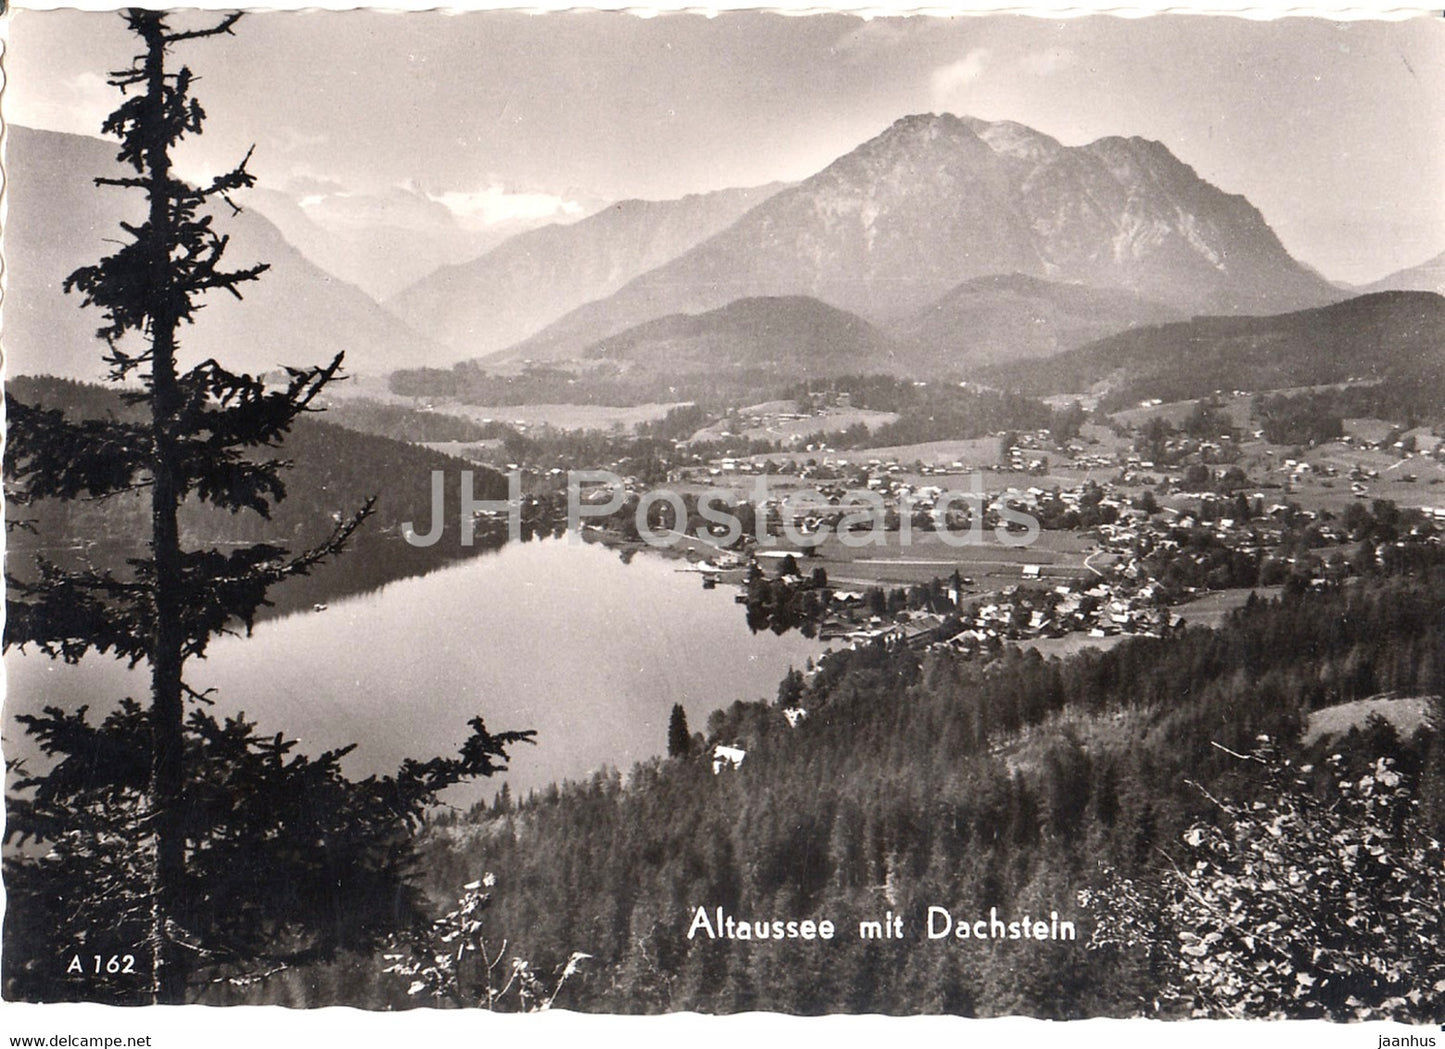 Altaussee mit Dachstein - old postcard - Austria - unused - JH Postcards